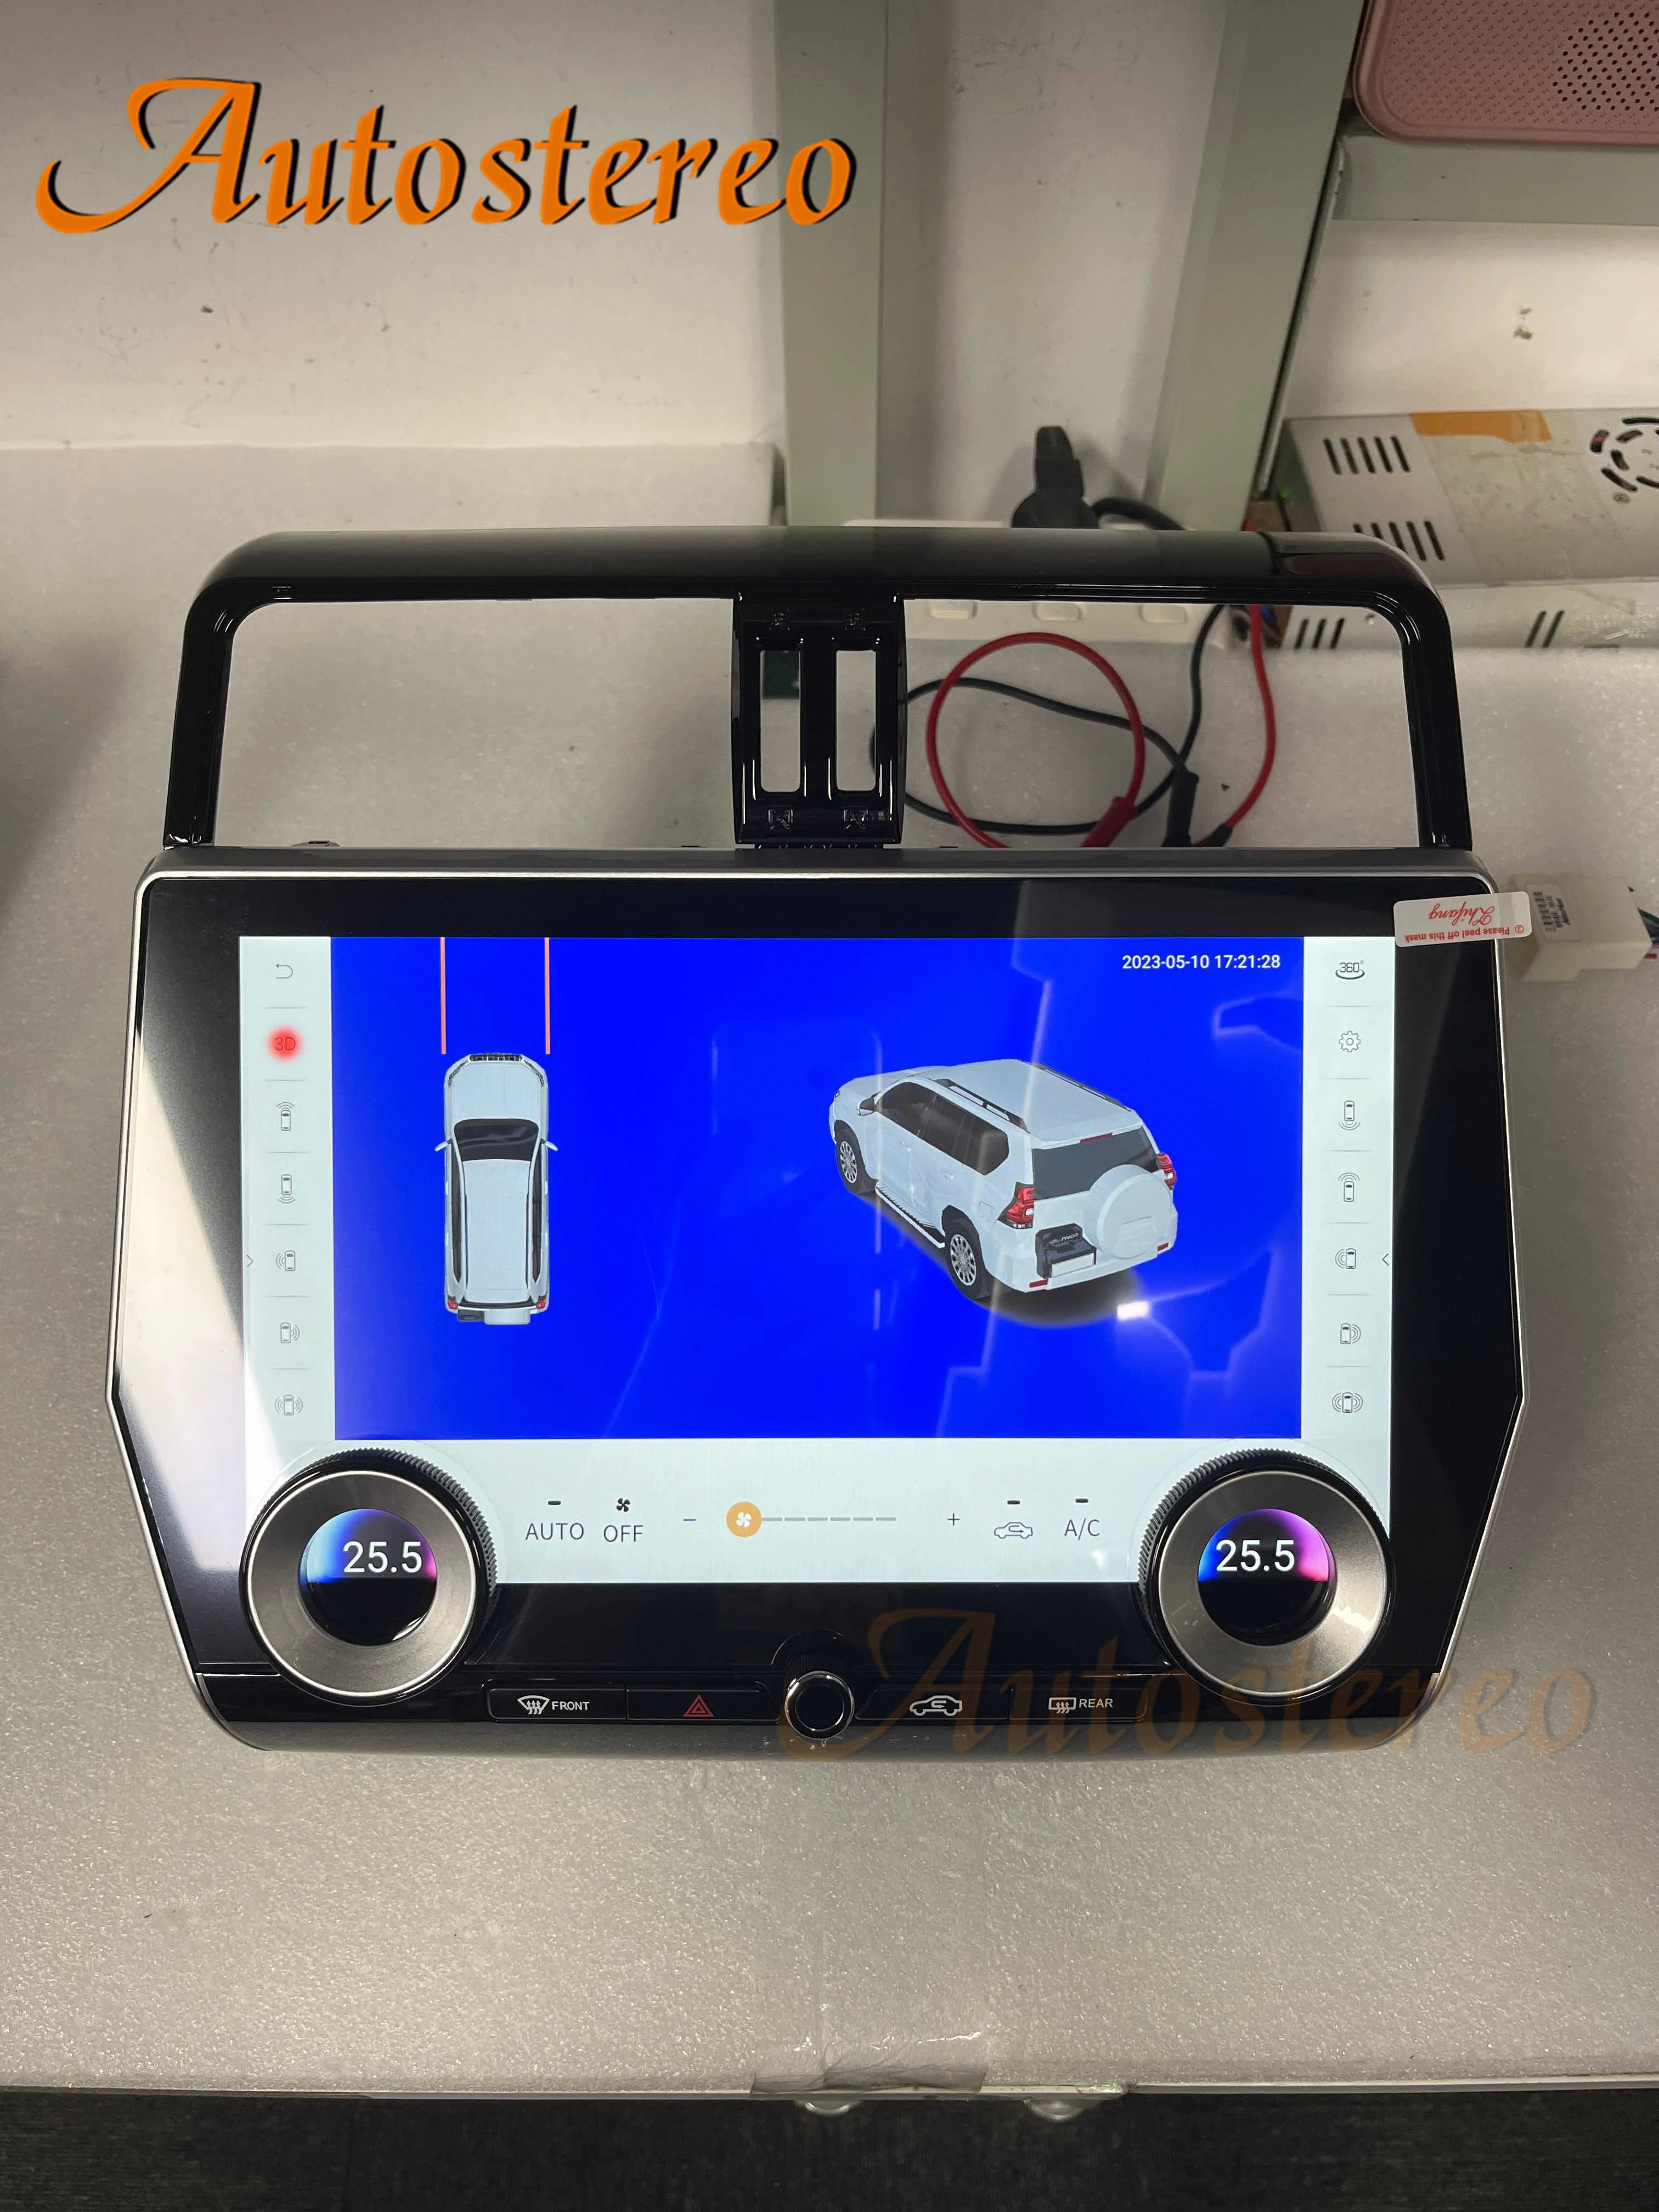 Qualcomm Android11.0 Экран Tesla Для Toyota Land Cruiser Prado 150 2018 + Автомобильный GPS-Навигатор Мультимедийный Плеер Головное устройство Carplay